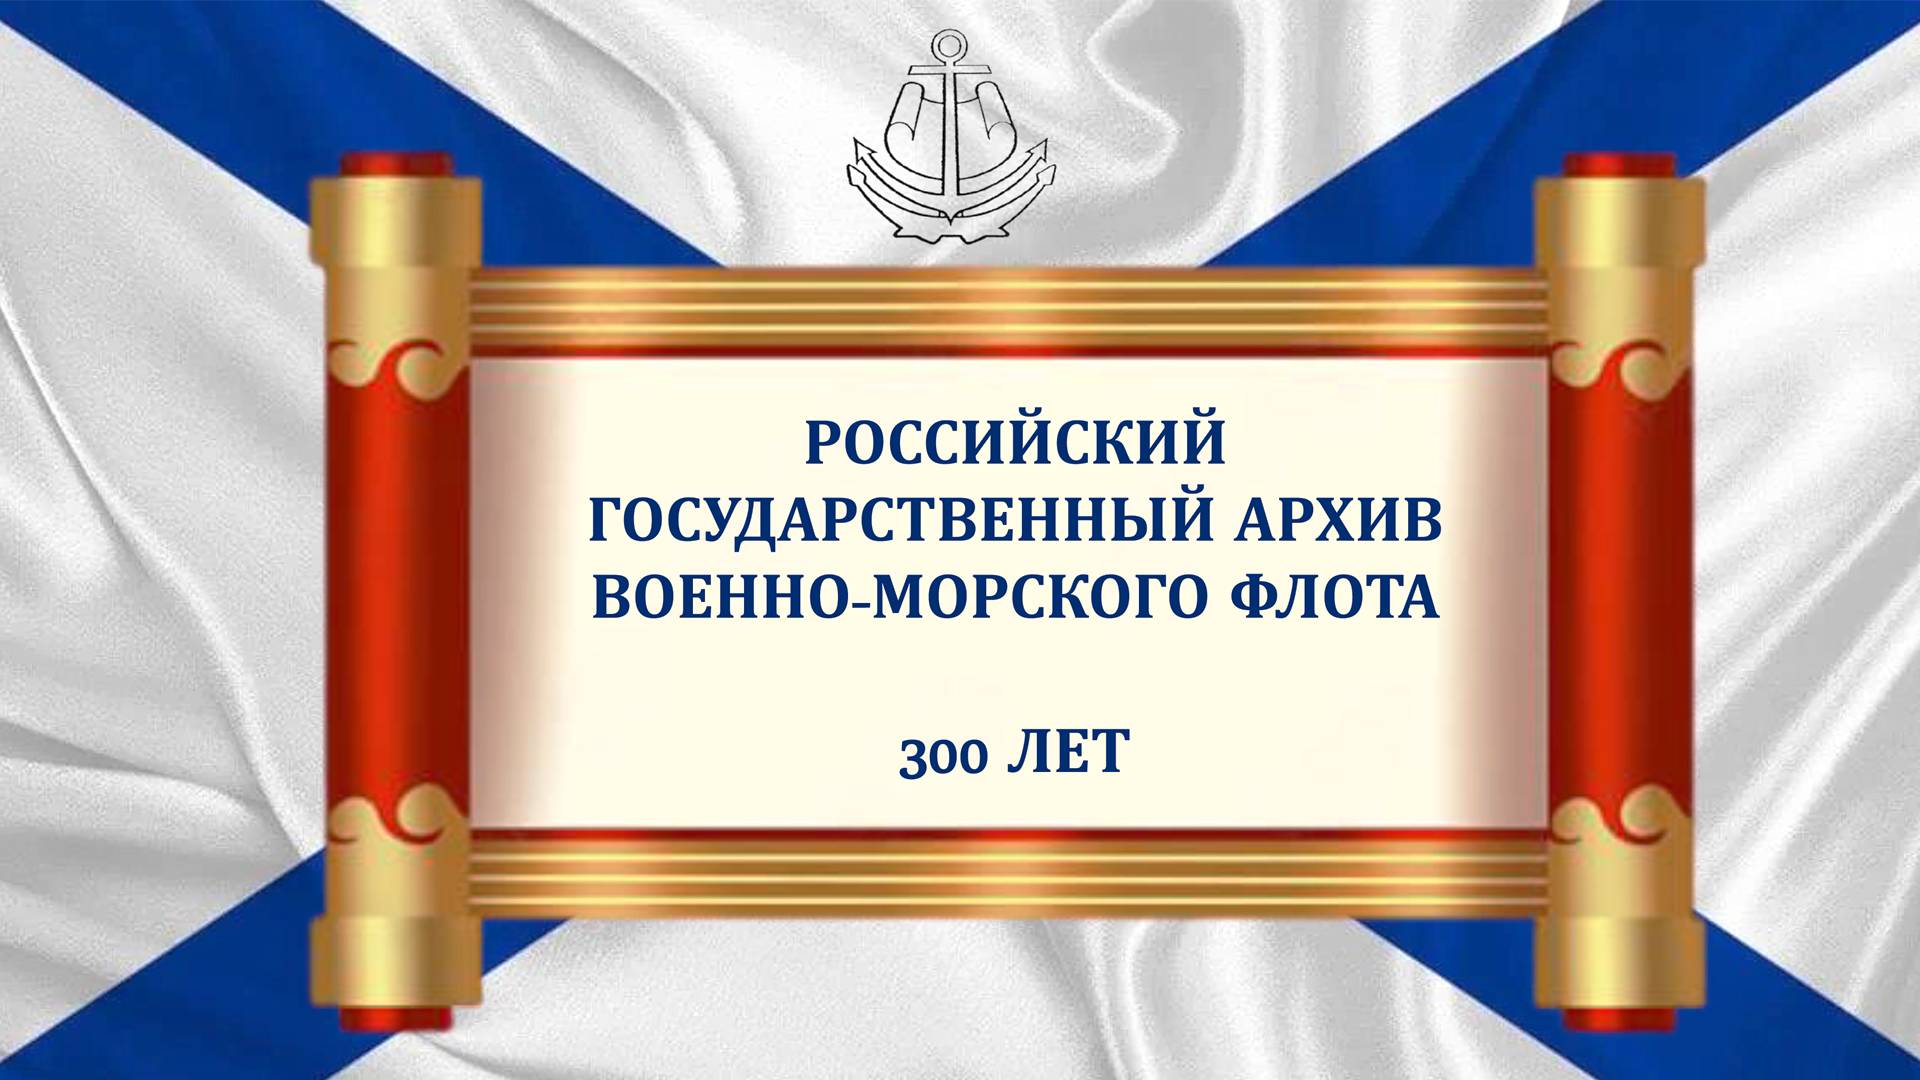 Торжественное заседание, посвящённое 300-летию Российского государственного архива ВМФ